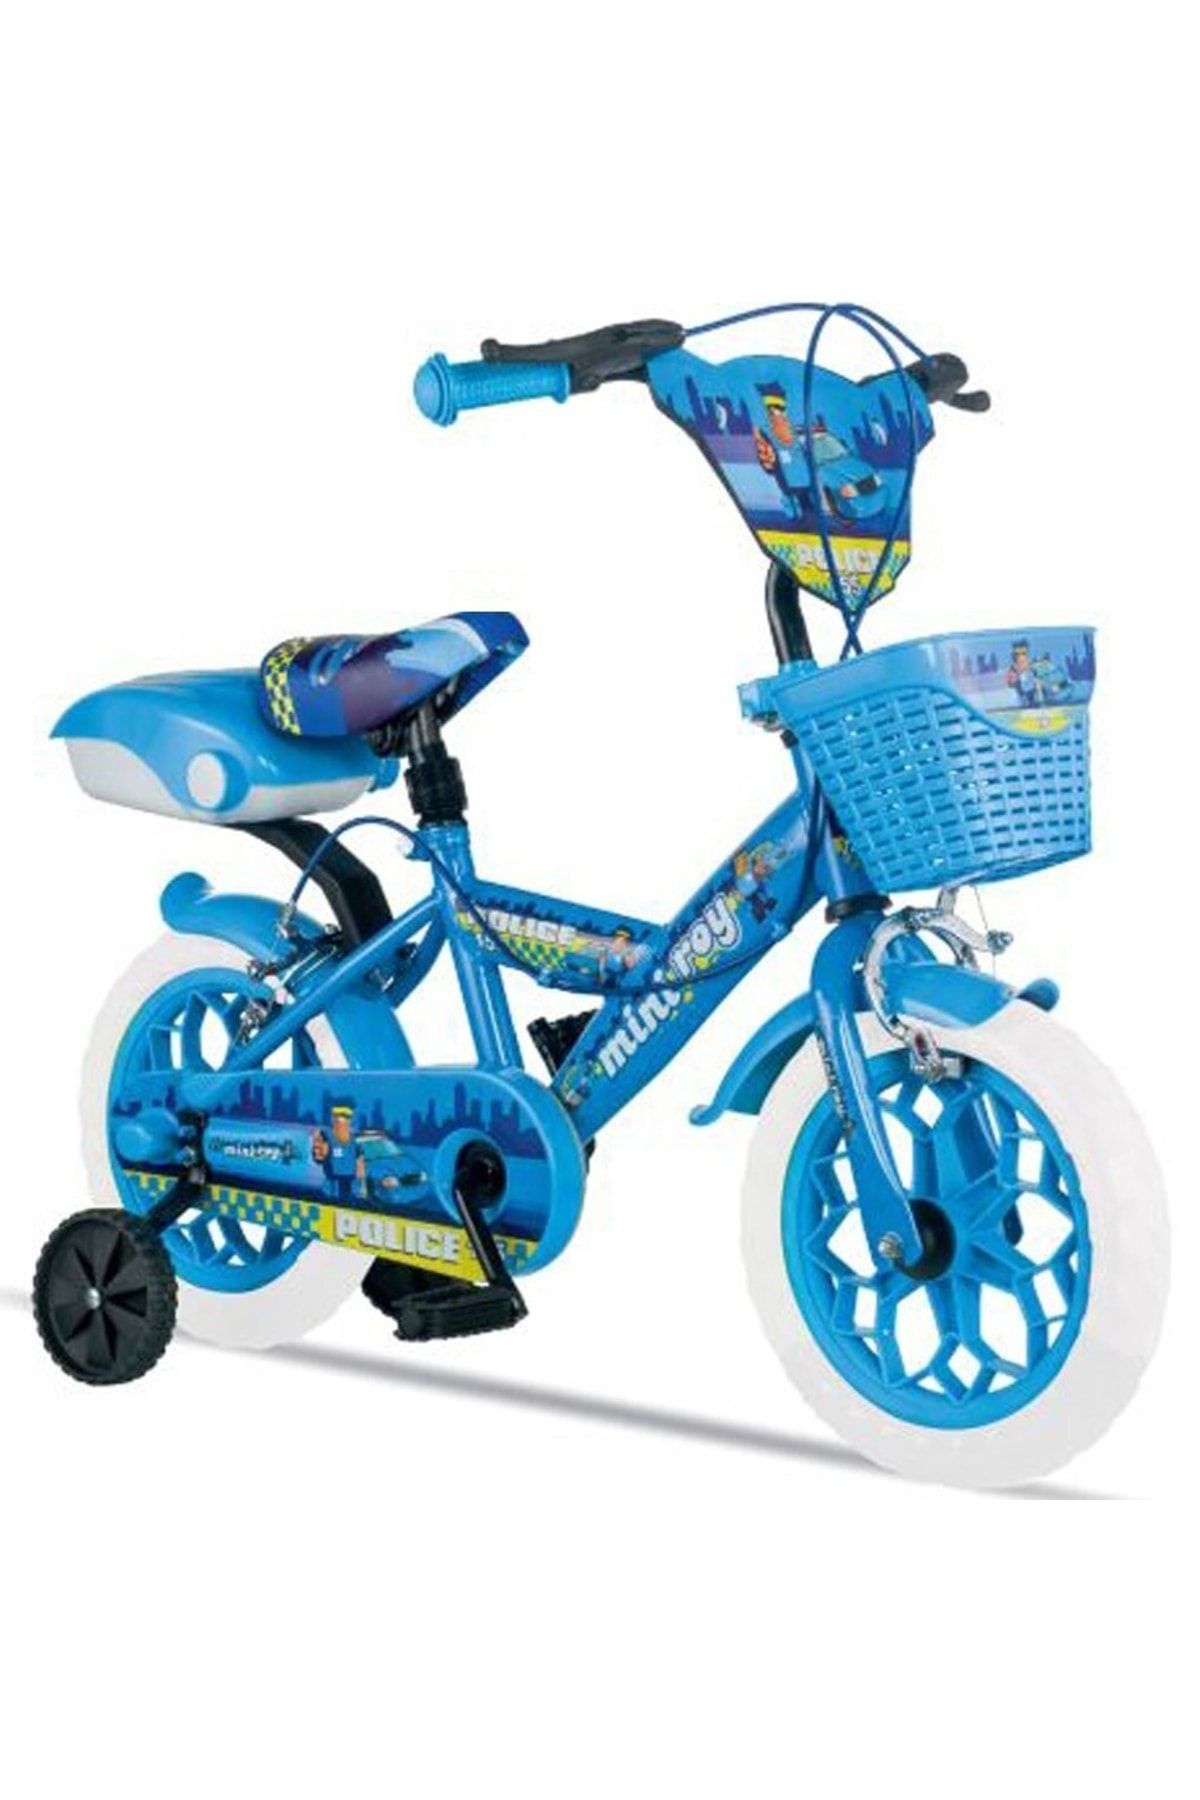 Tunca Miniroy 14 Jant Mavi Çocuk Bisikleti